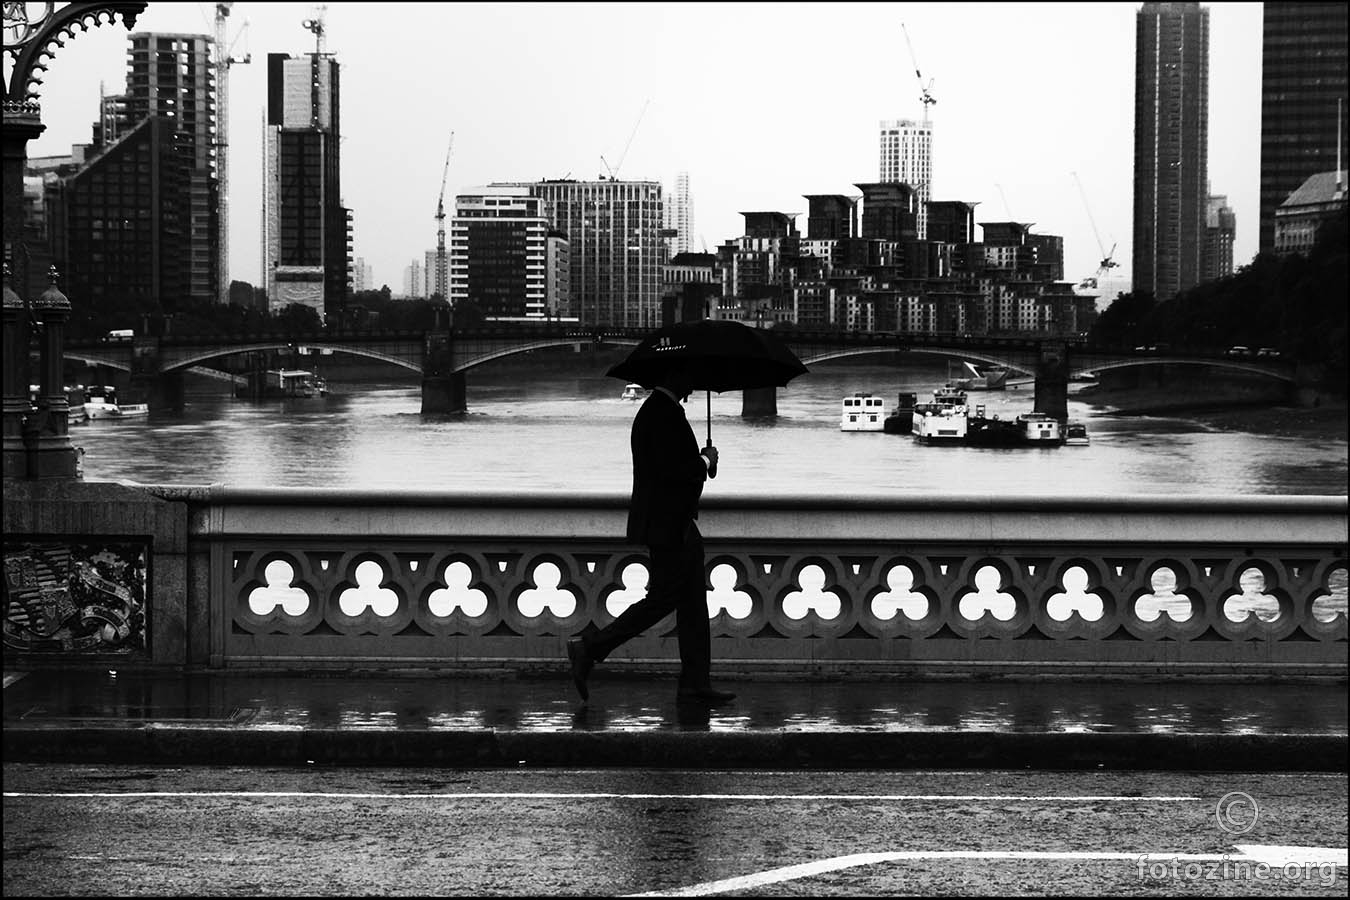 Šetnja mokrim London Bridge-om...